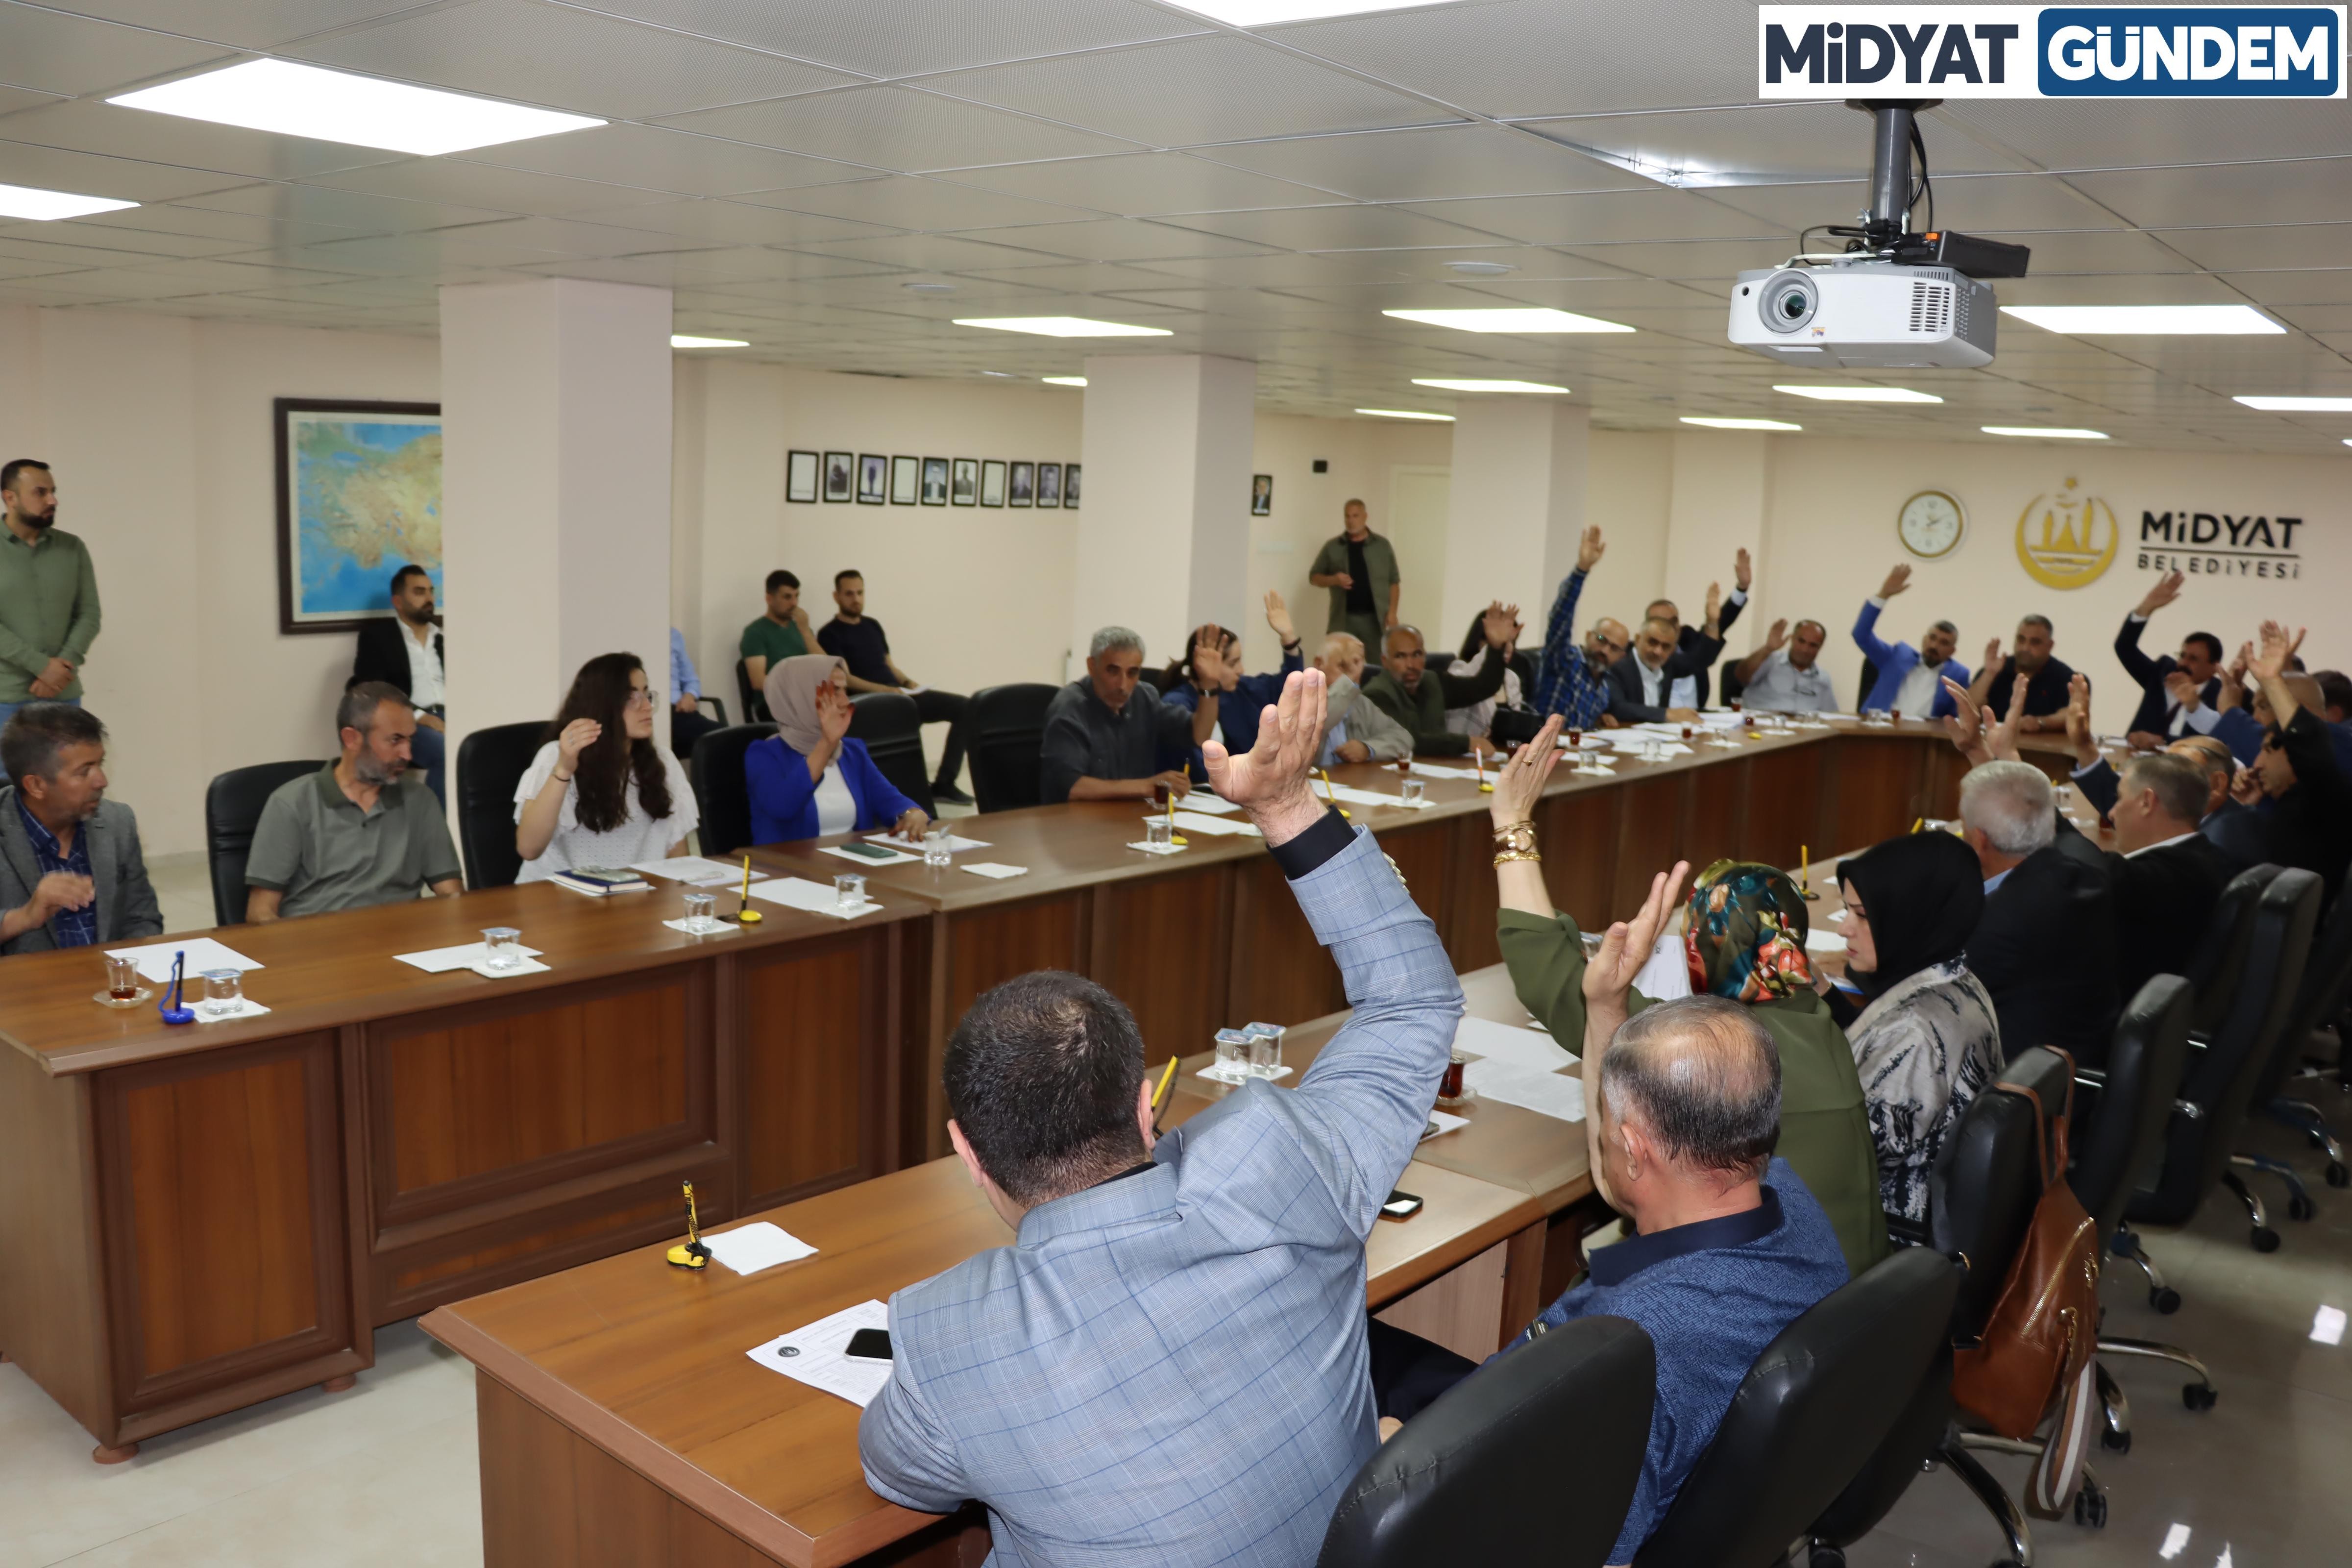 Midyat Belediye Meclis Toplantısı Yapıldı (4)